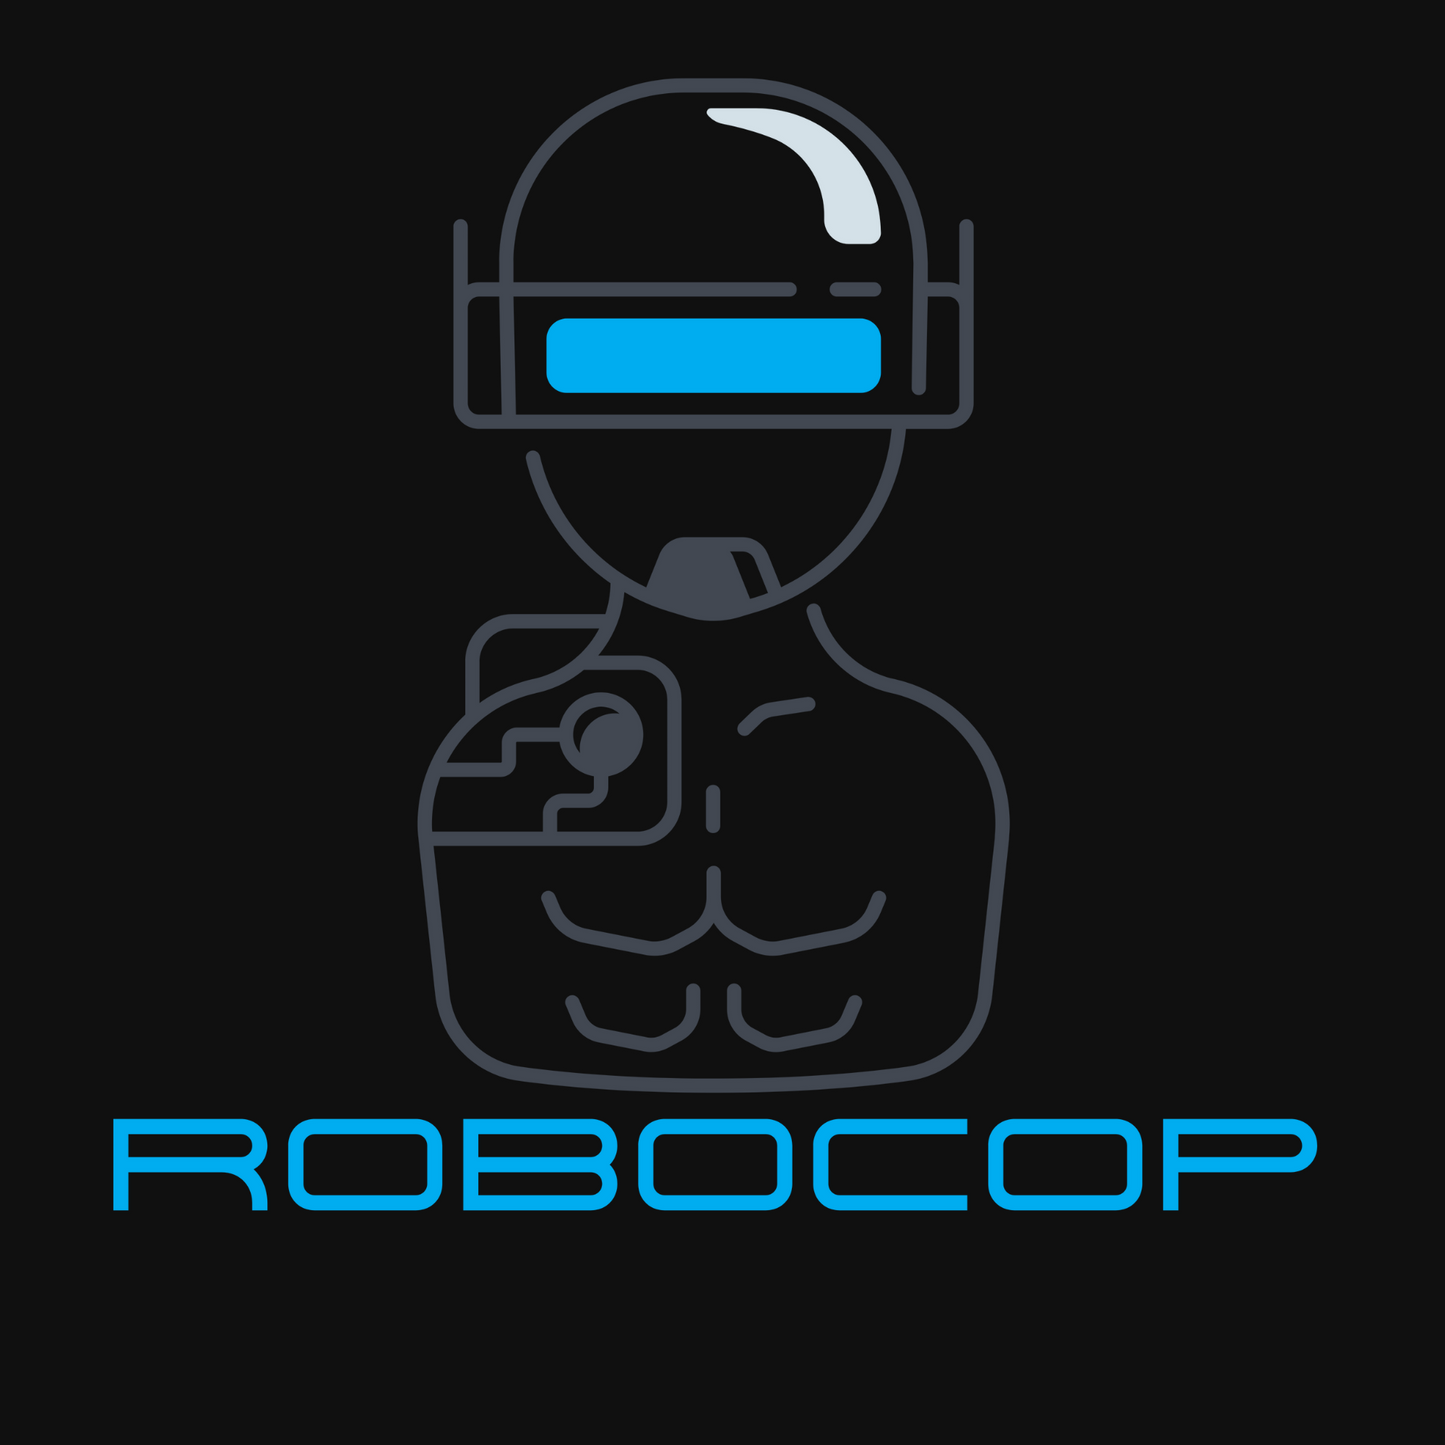 LEO Robocop T shirt